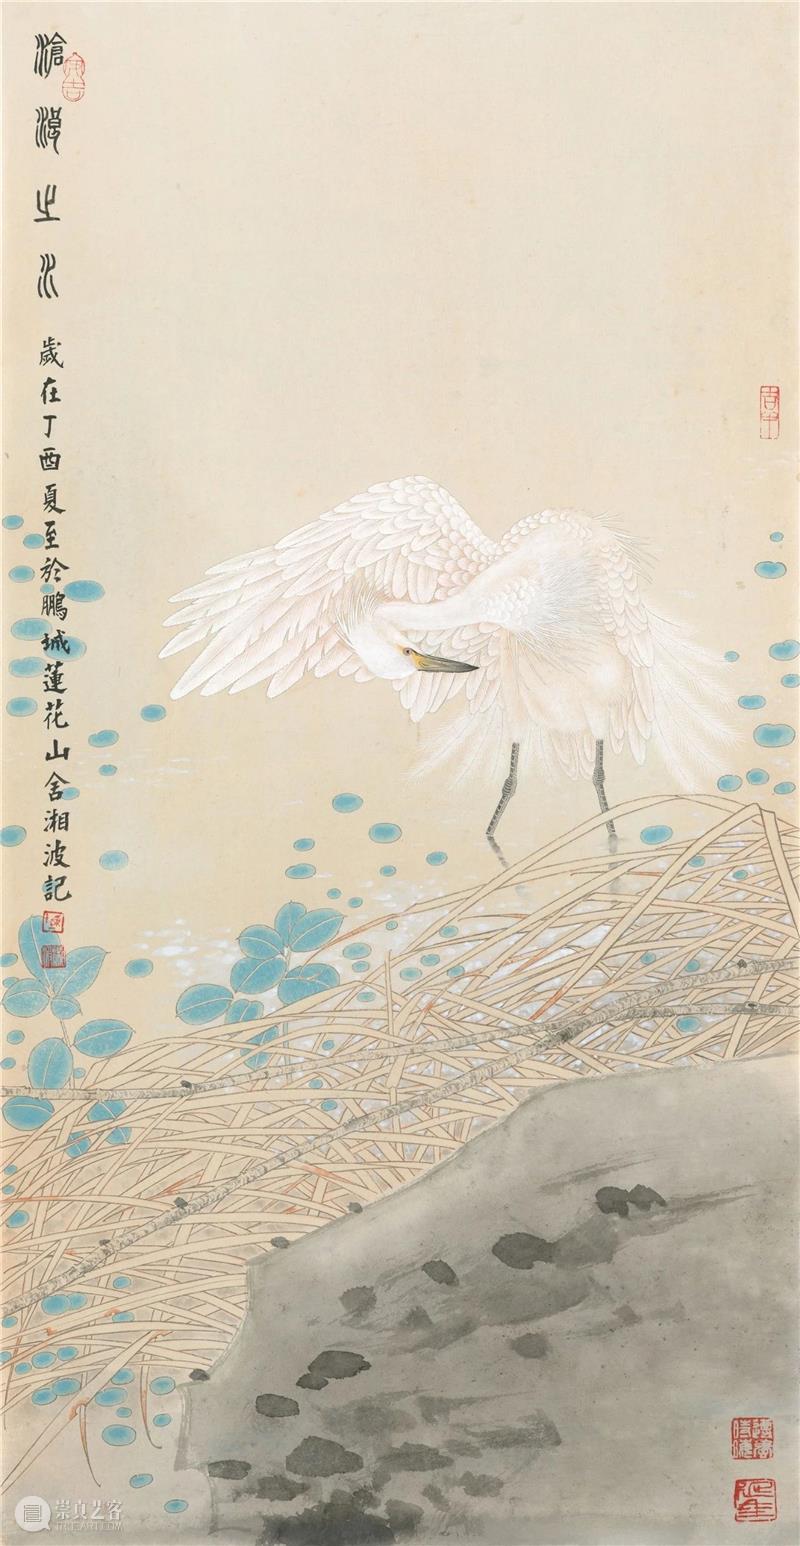 展览预告│“沧浪之水——陈湘波作品展”将于9月1日在北京画院美术馆开展 崇真艺客